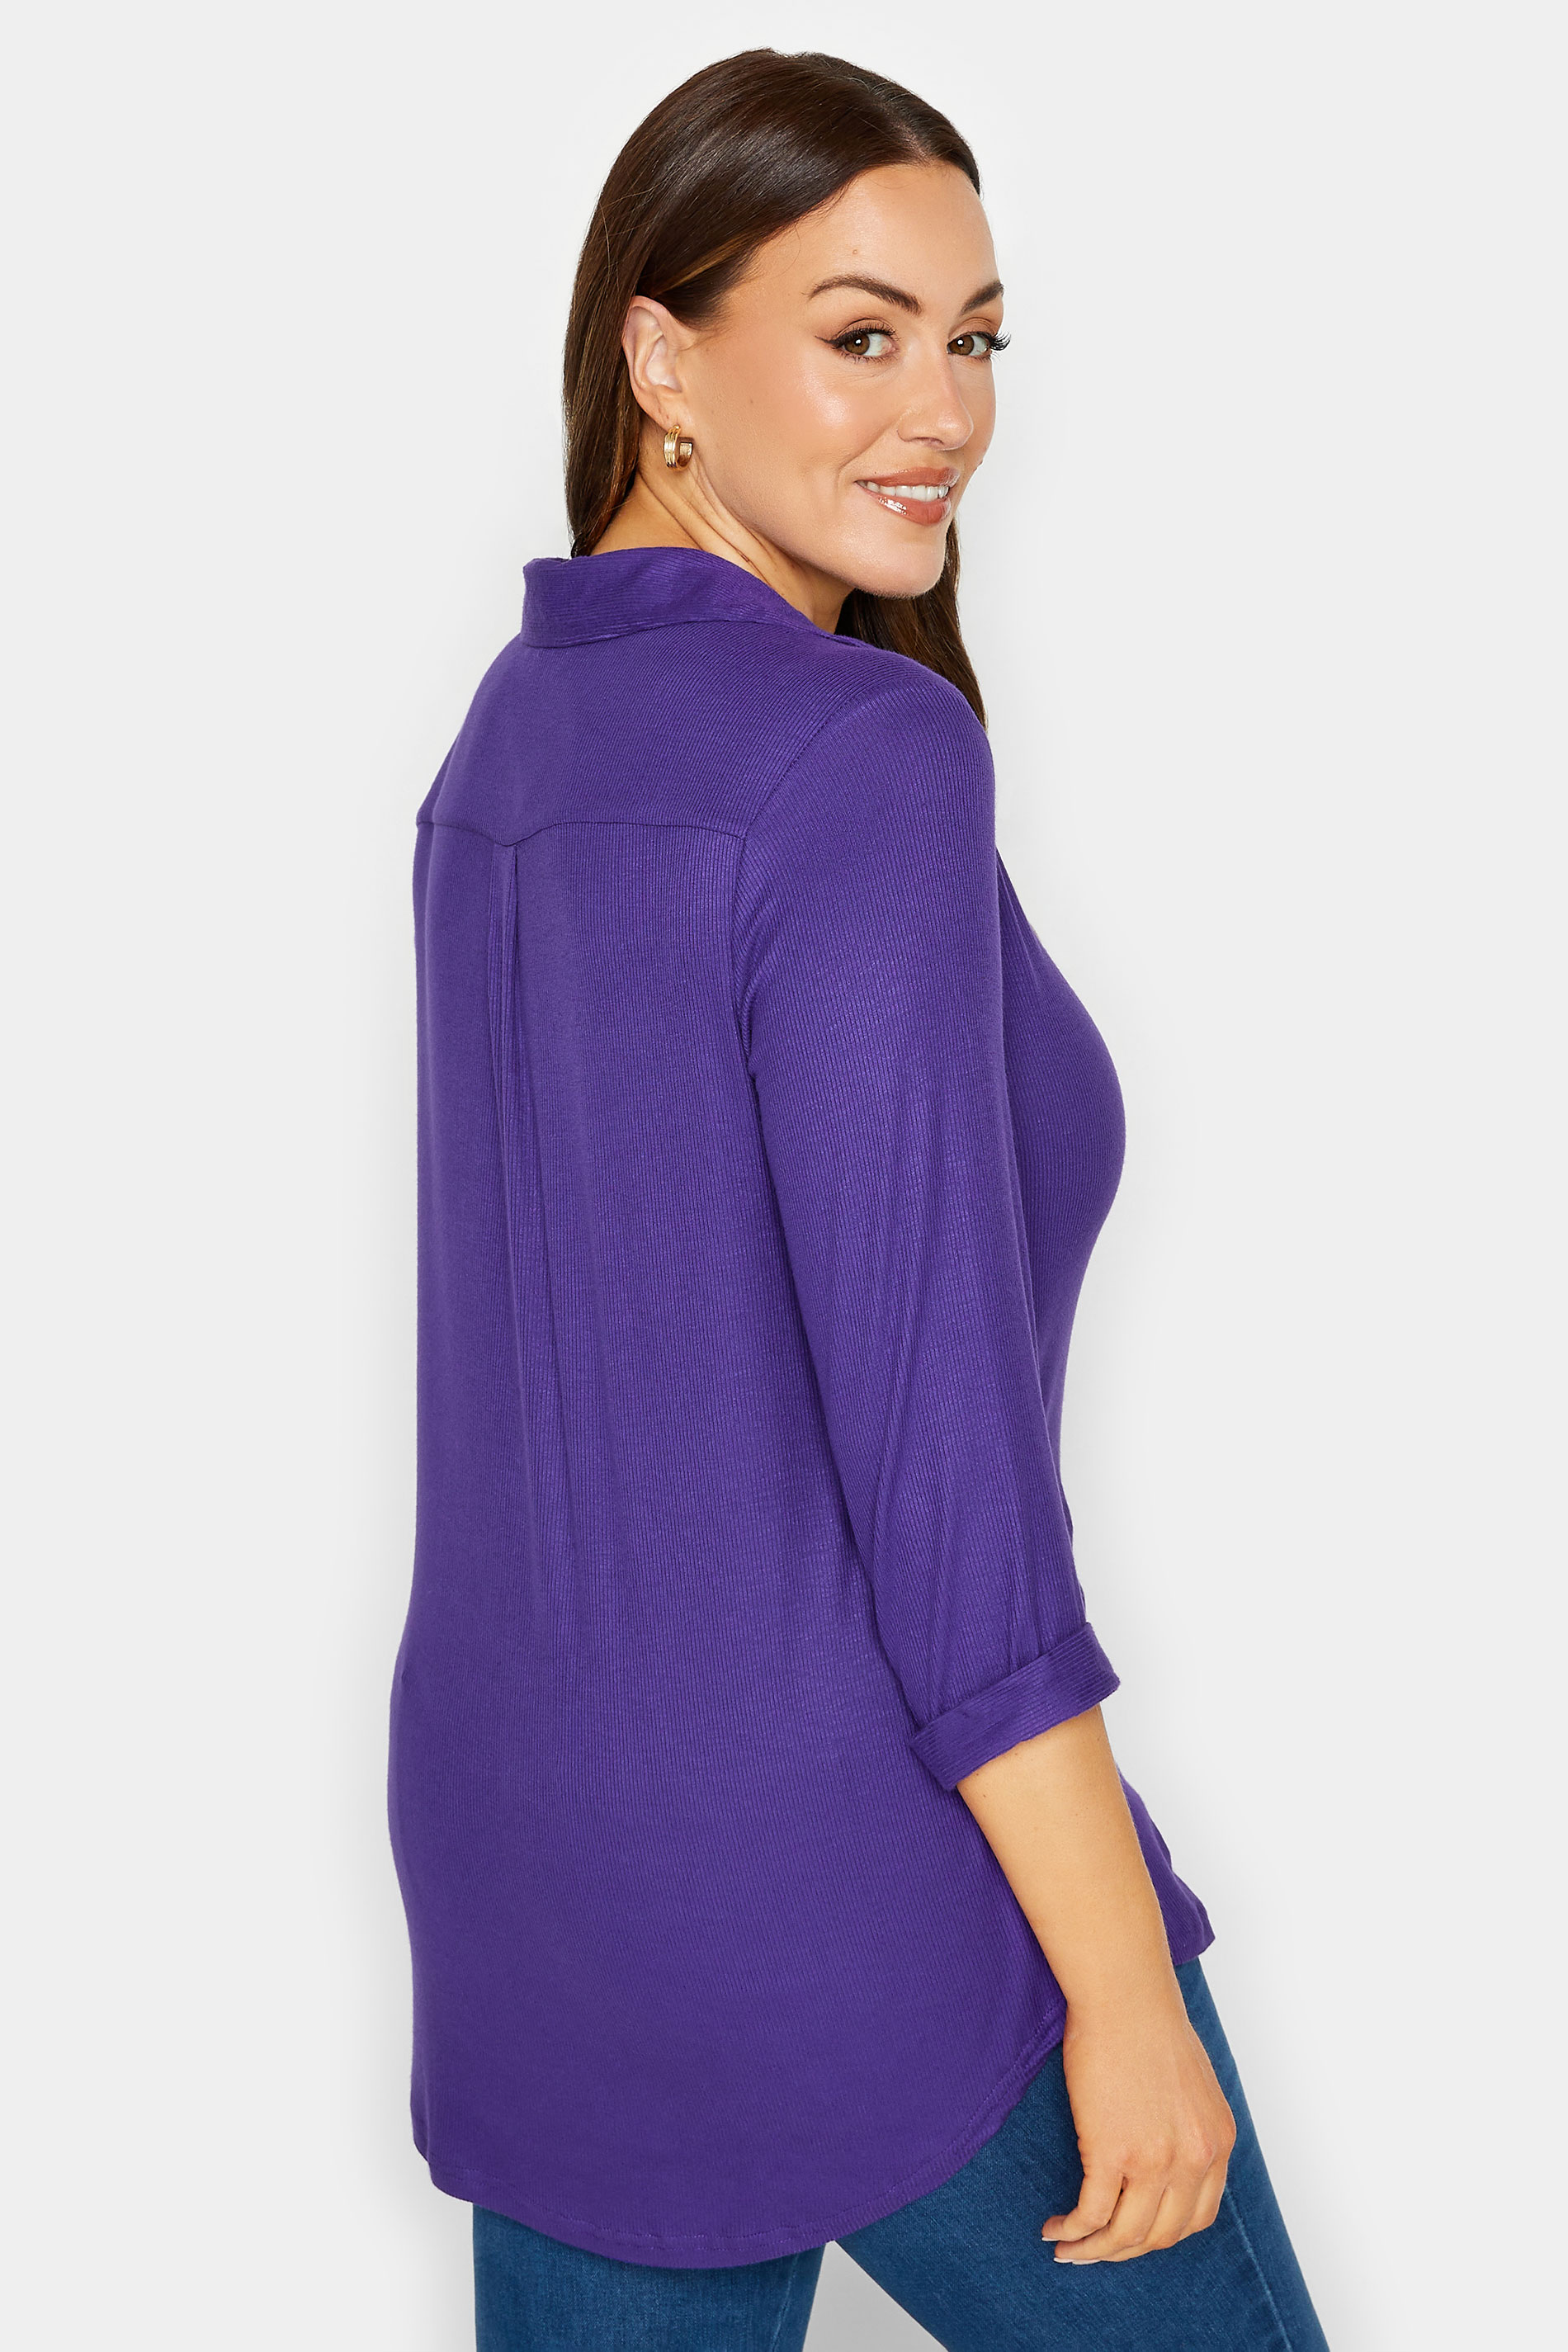 M&Co Purple V-Neck Half Placket Shirt | M&Co 3